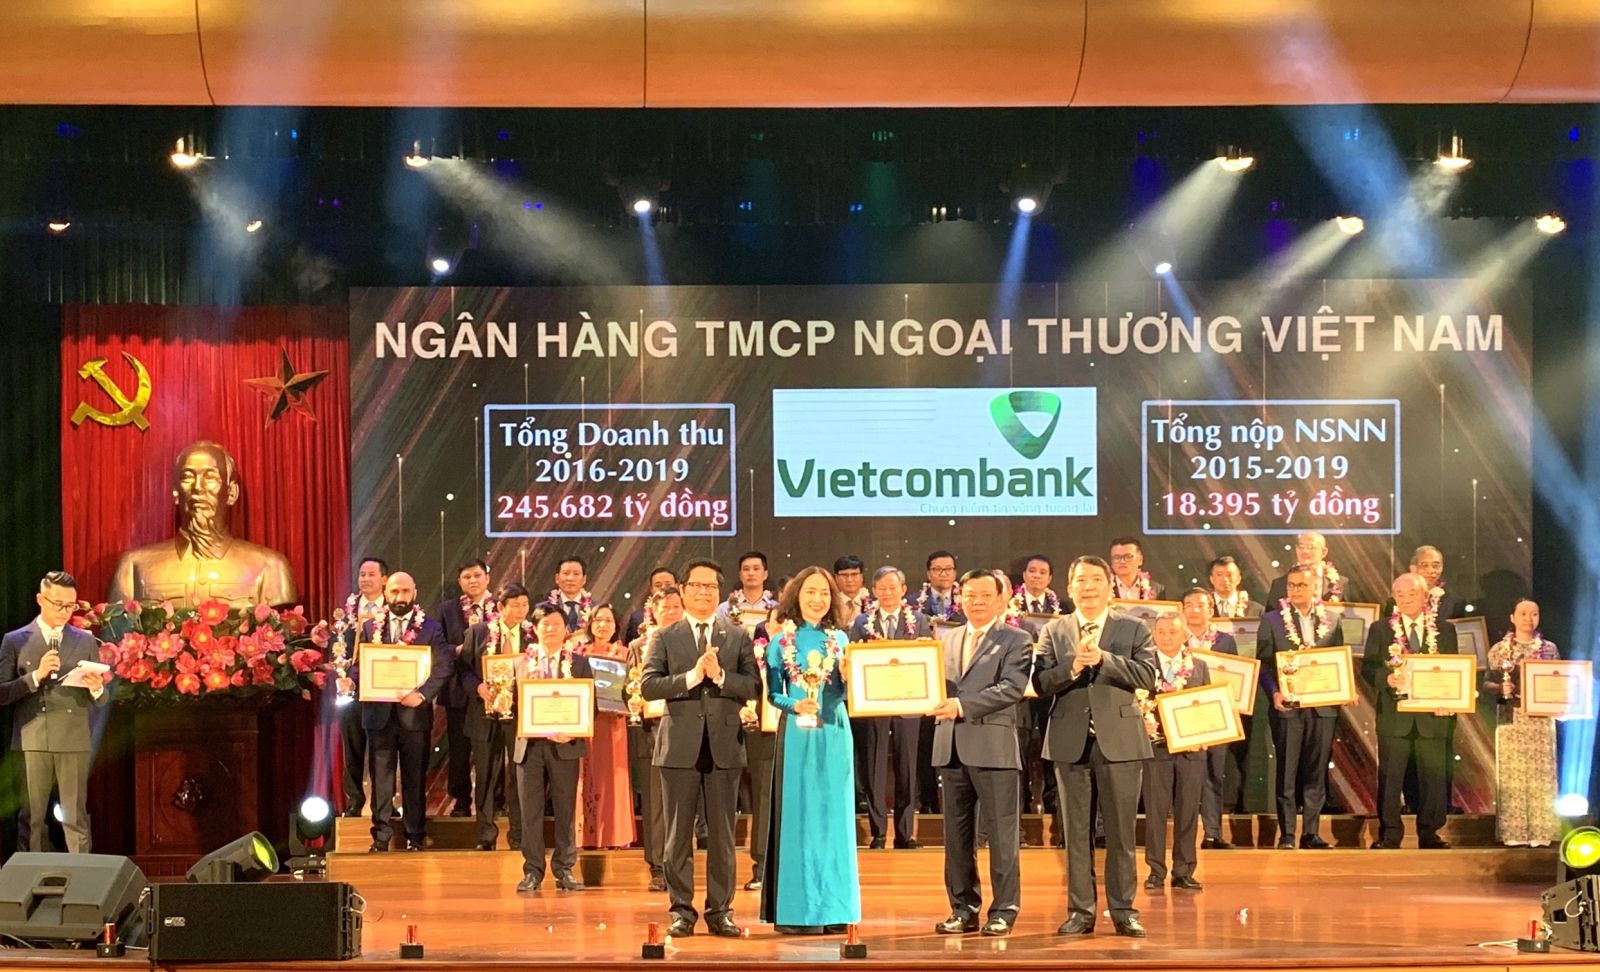 Bộ trưởng Bộ Tài chính Đinh Tiến Dũng trao tặng Bằng khen cho bà Nguyễn Thị Kim Oanh – Phó Tổng Giám đốc Vietcombank, đại diện Vietcombank lên sân khấu nhận vinh danh (Ảnh – Huy Thắng)